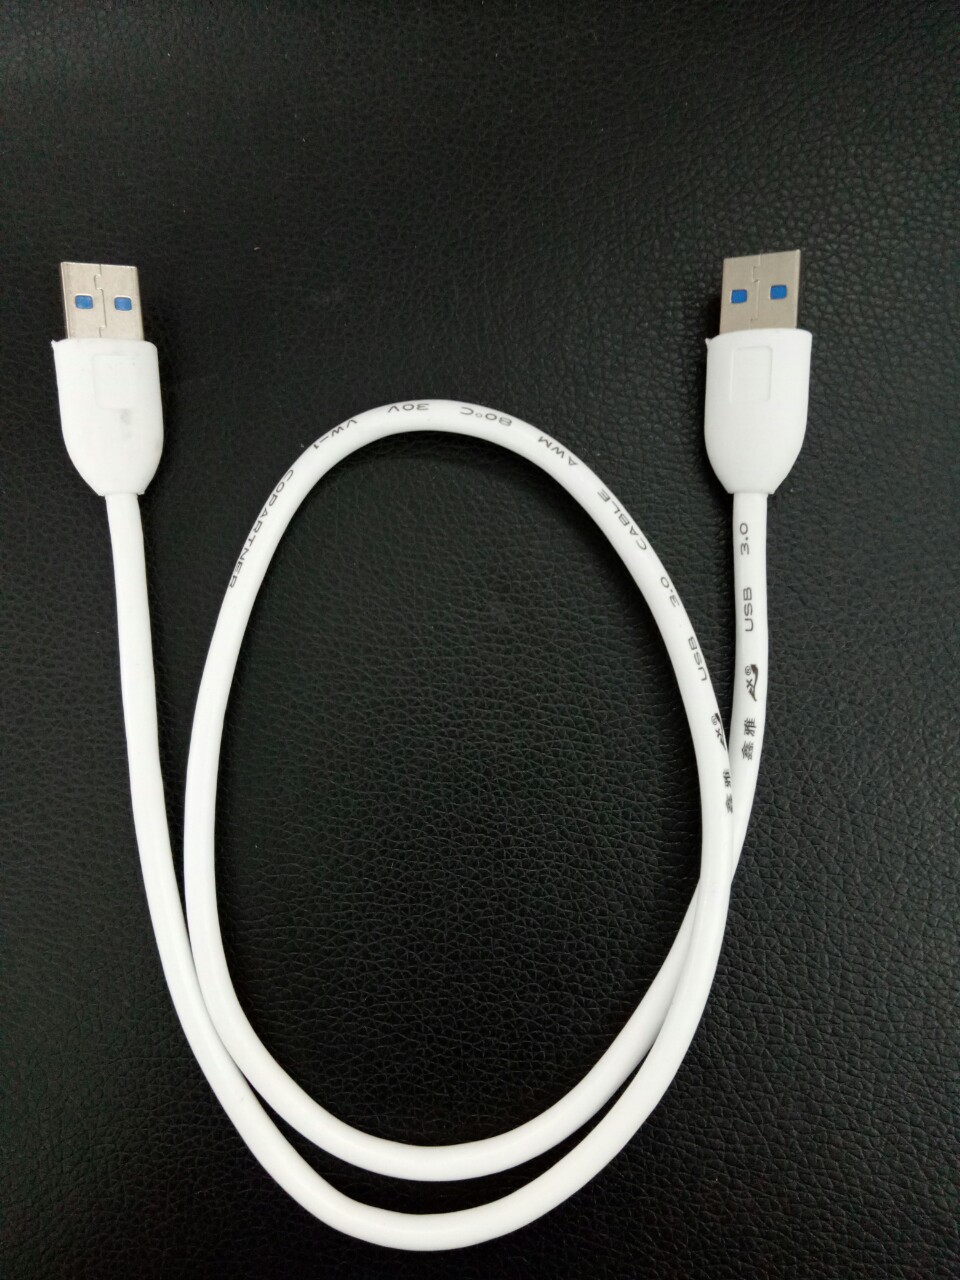  Dây USB 2 đầu đực 3.0  dài 65cm